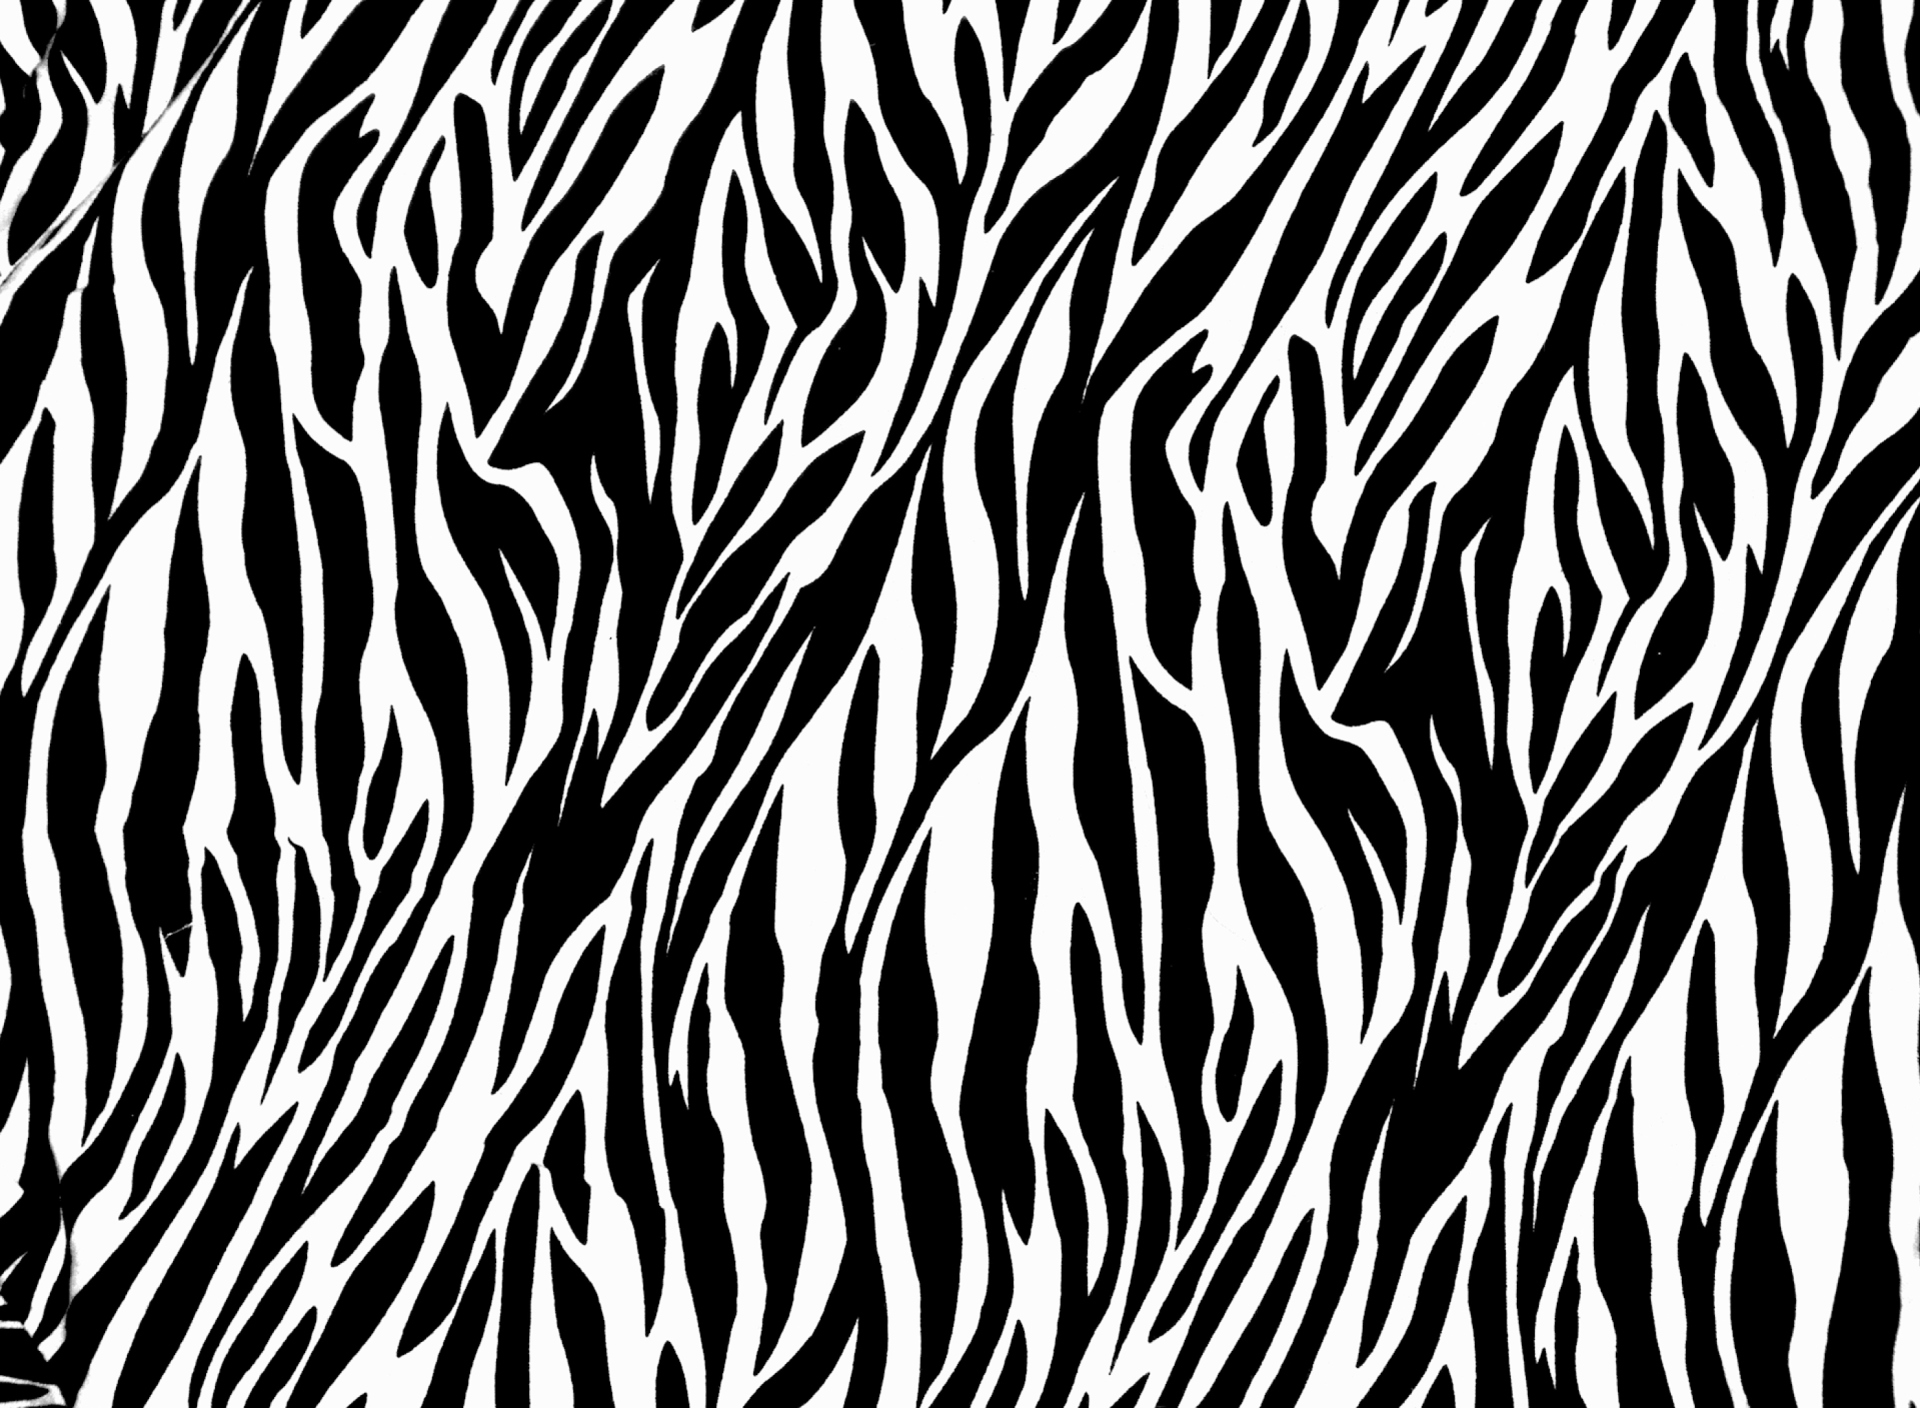 Das Zebra Print Wallpaper 1920x1408